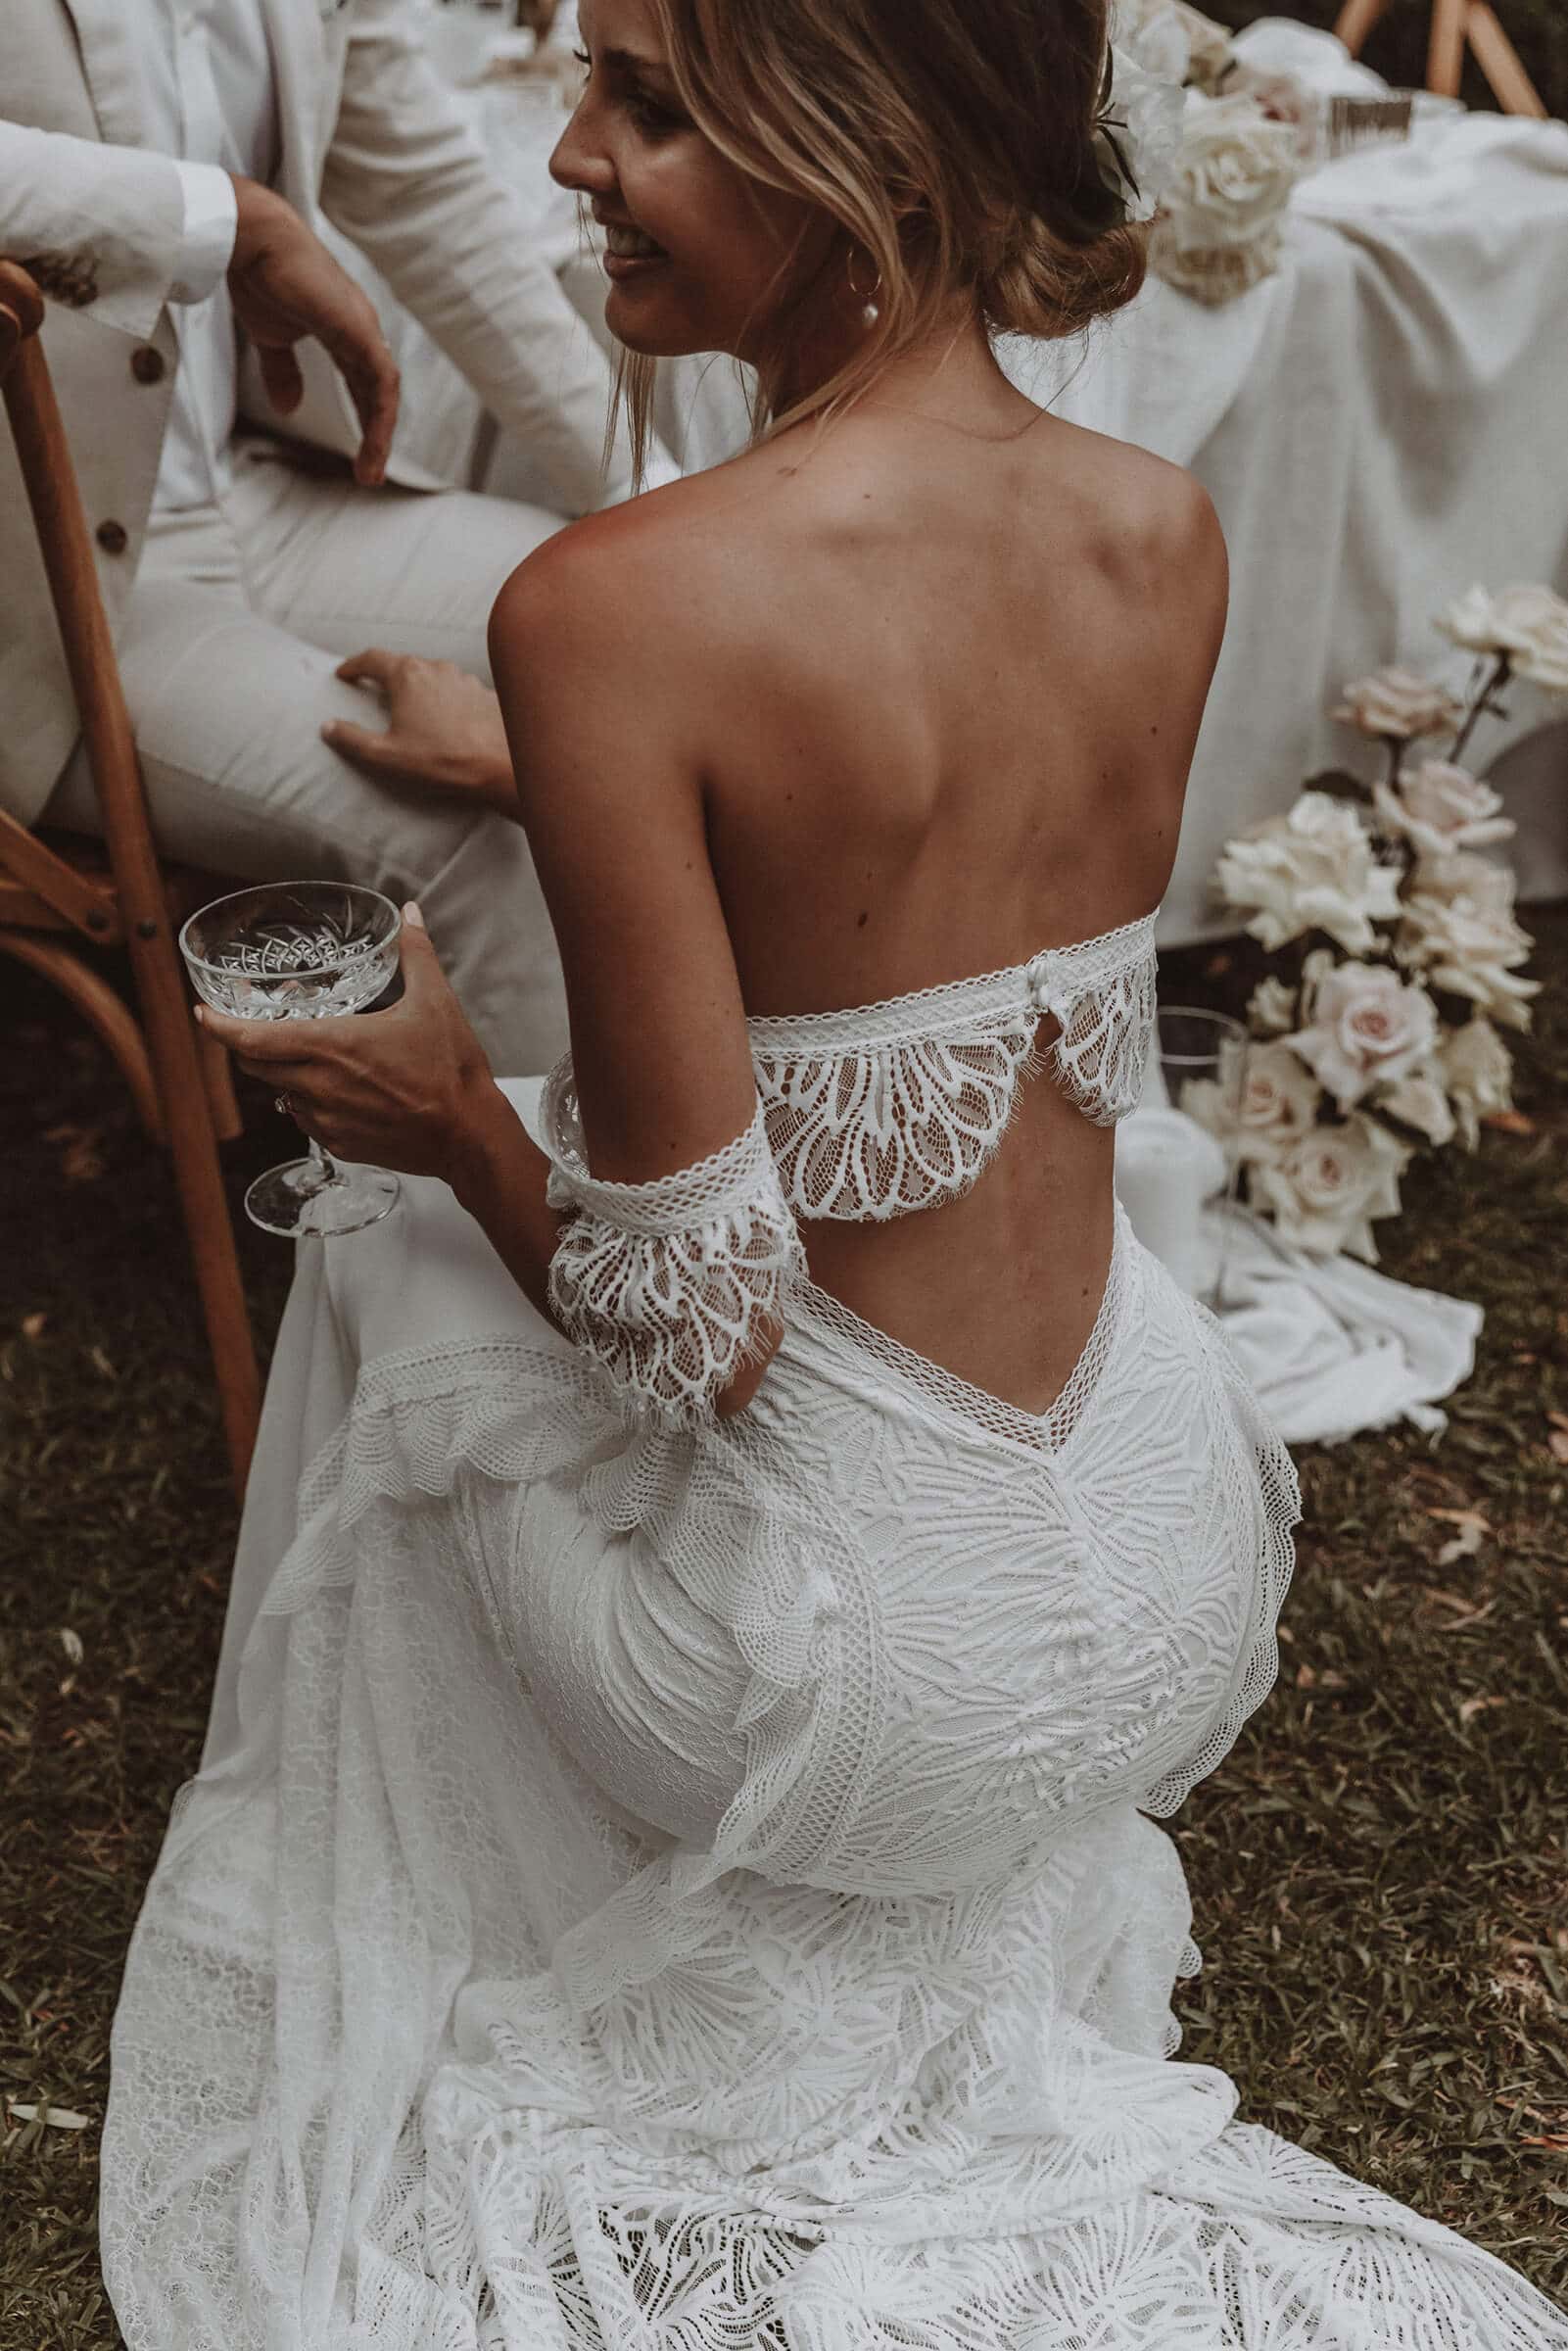 Bra for Wedding Dress  8 UK Bra Styles for Bridal Dresses – Bra